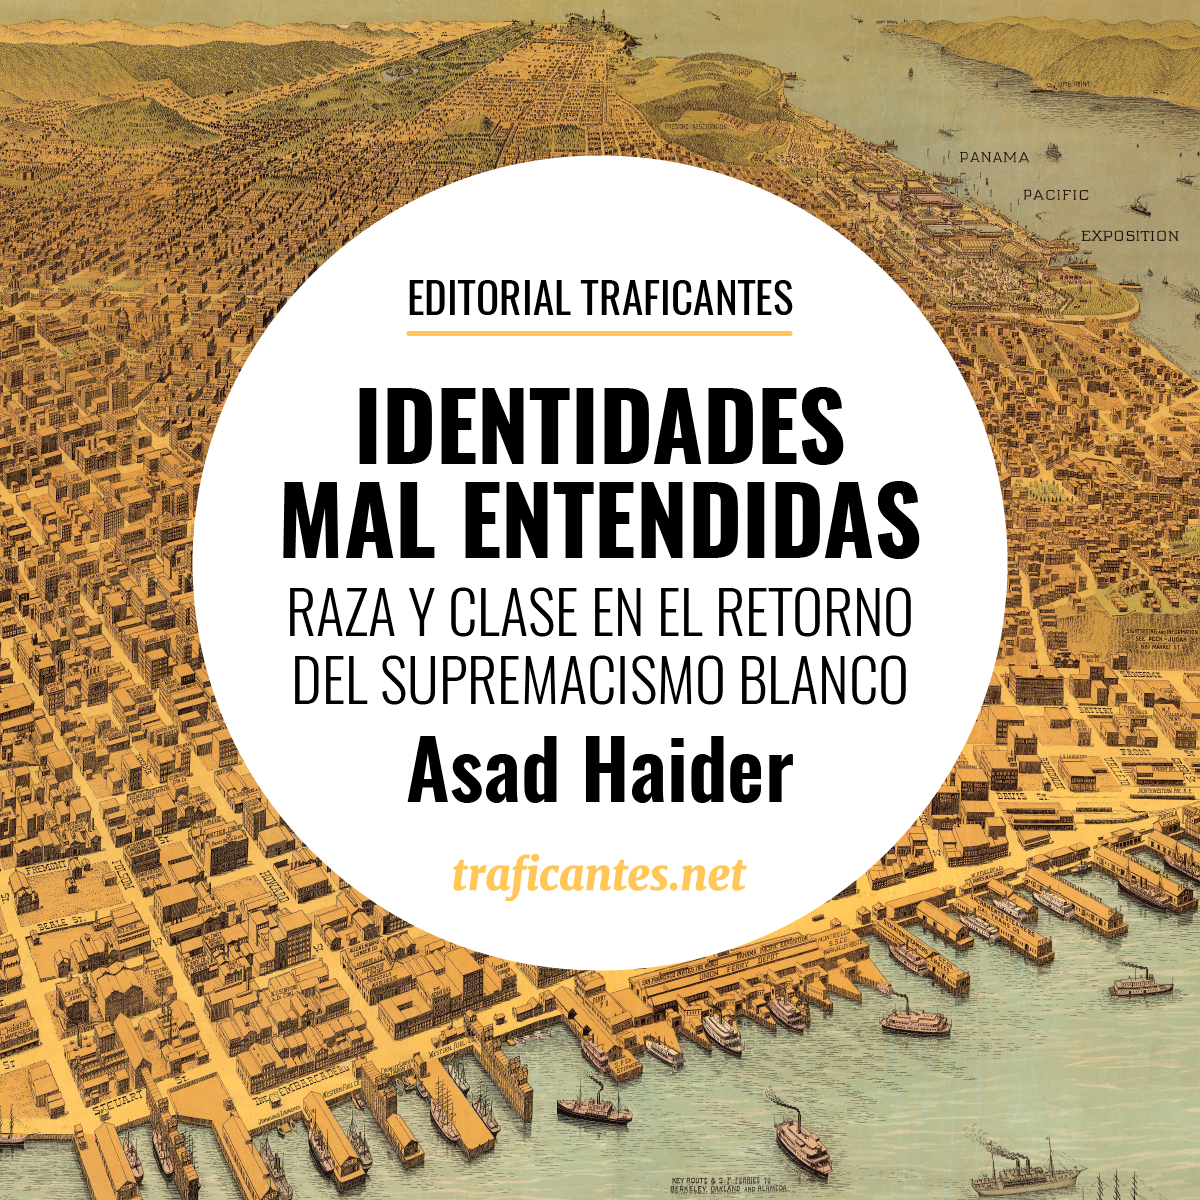 Asad Haider ha escrito un texto breve e inteligente, que critica las políticas y el propio concepto de la identidad desde una perspectiva novedosa.